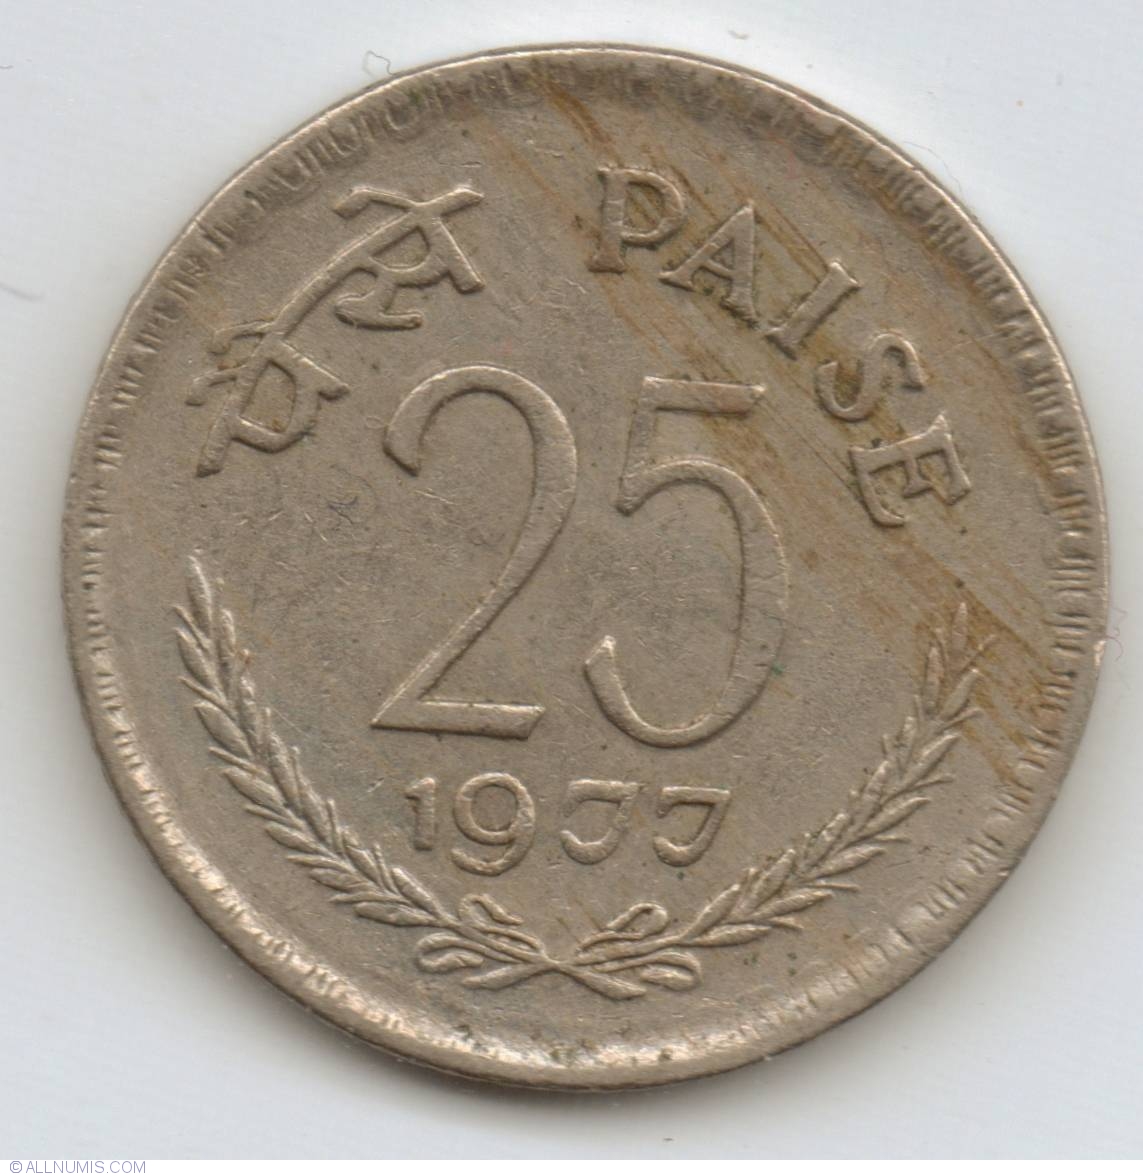 25-paise-1977-c-republic-1970-1980-india-coin-21904